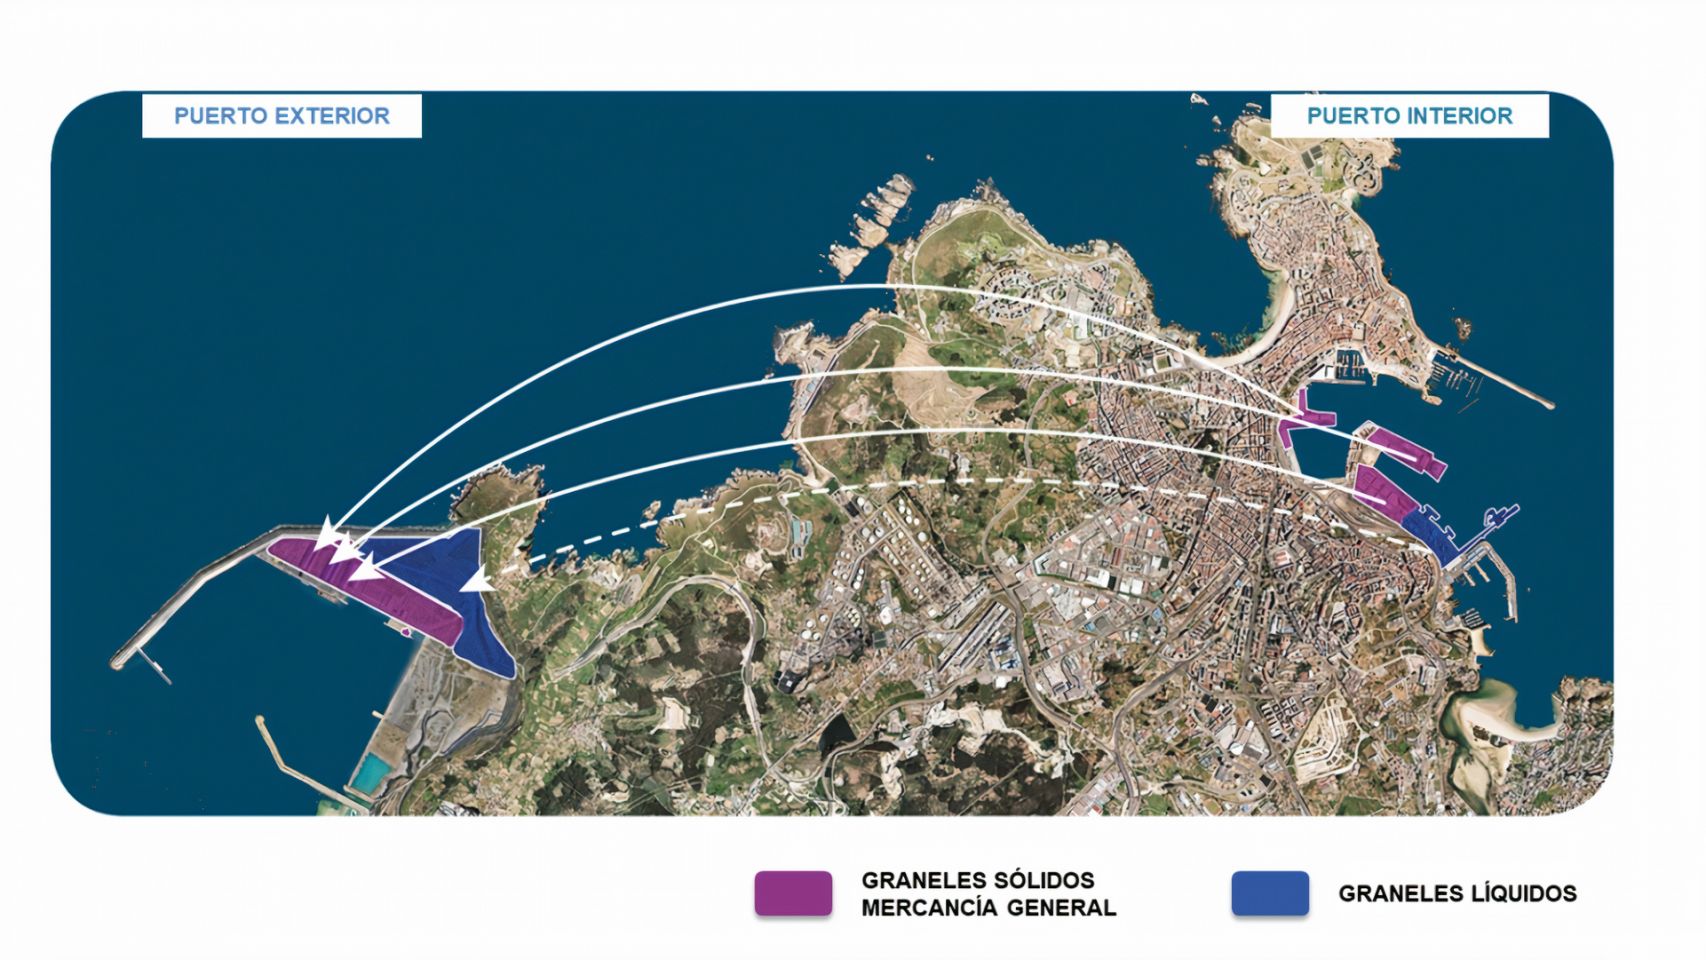 Traslados desde el puerto interior de A Coruña al nuevo puerto exterior, de las actividades relacionadas con graneles sólidos, líquidos y mercancía general